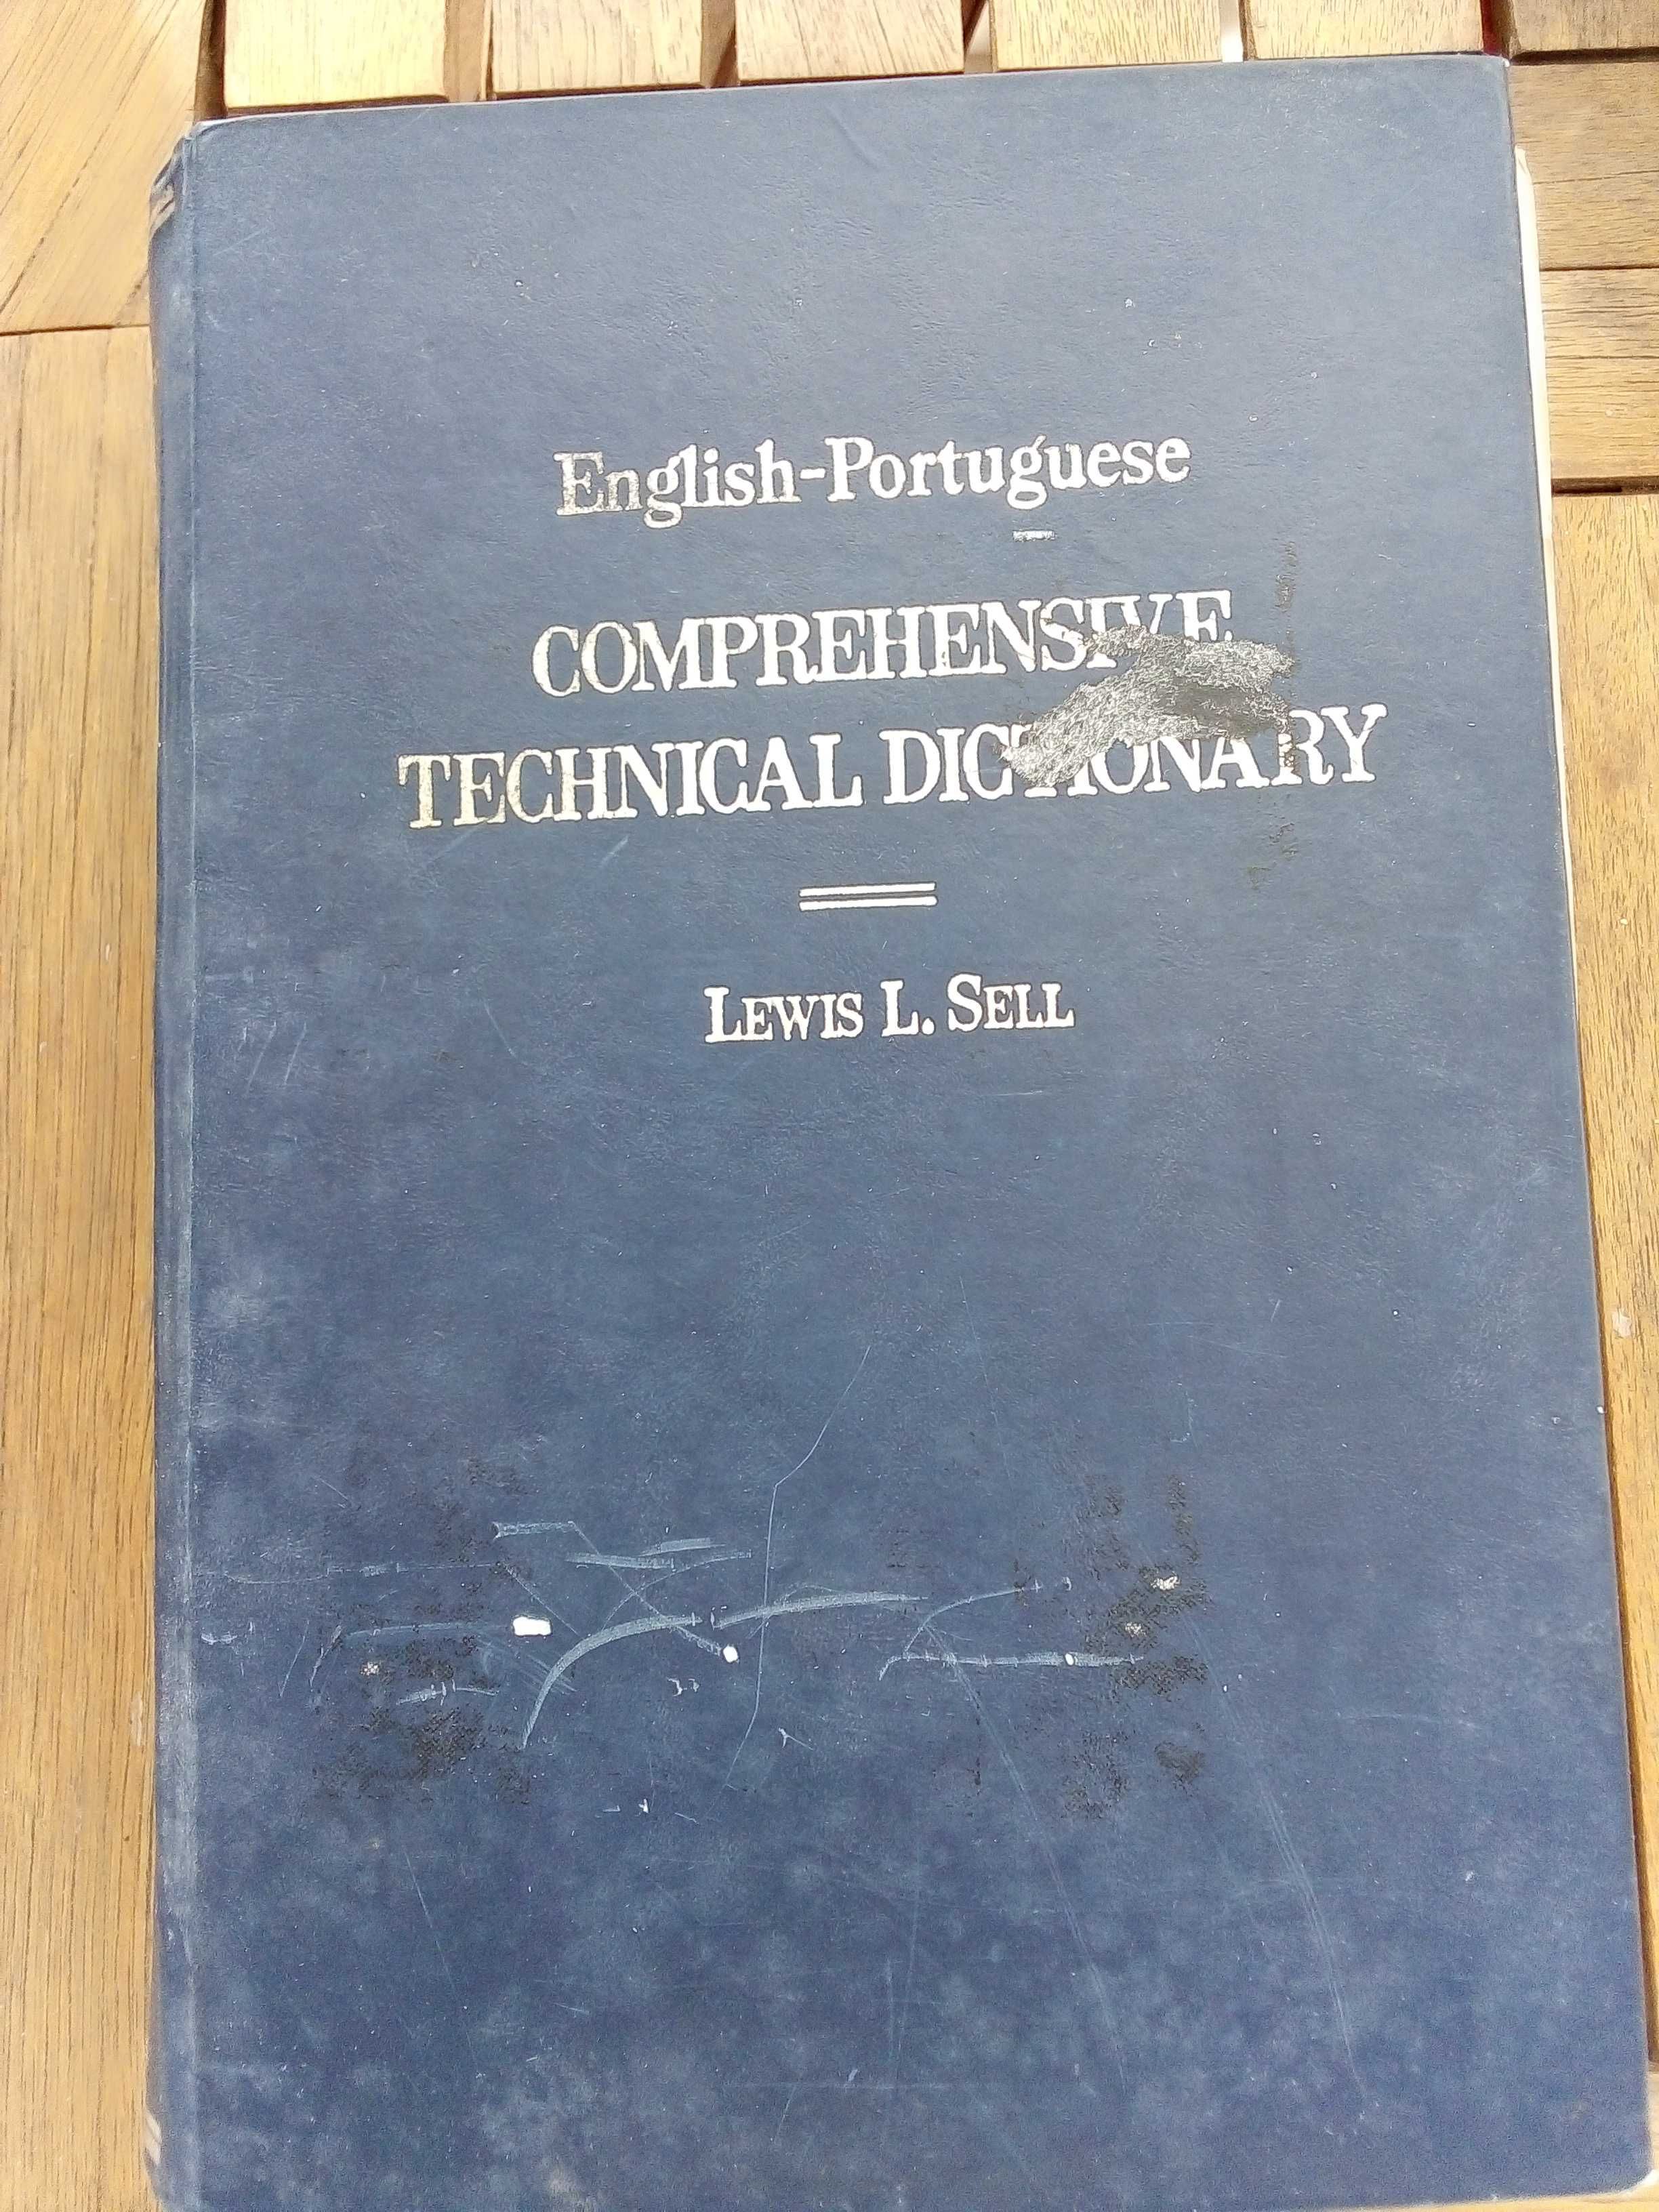 Dicionário técnico    Comprehensive Technical Dictionary